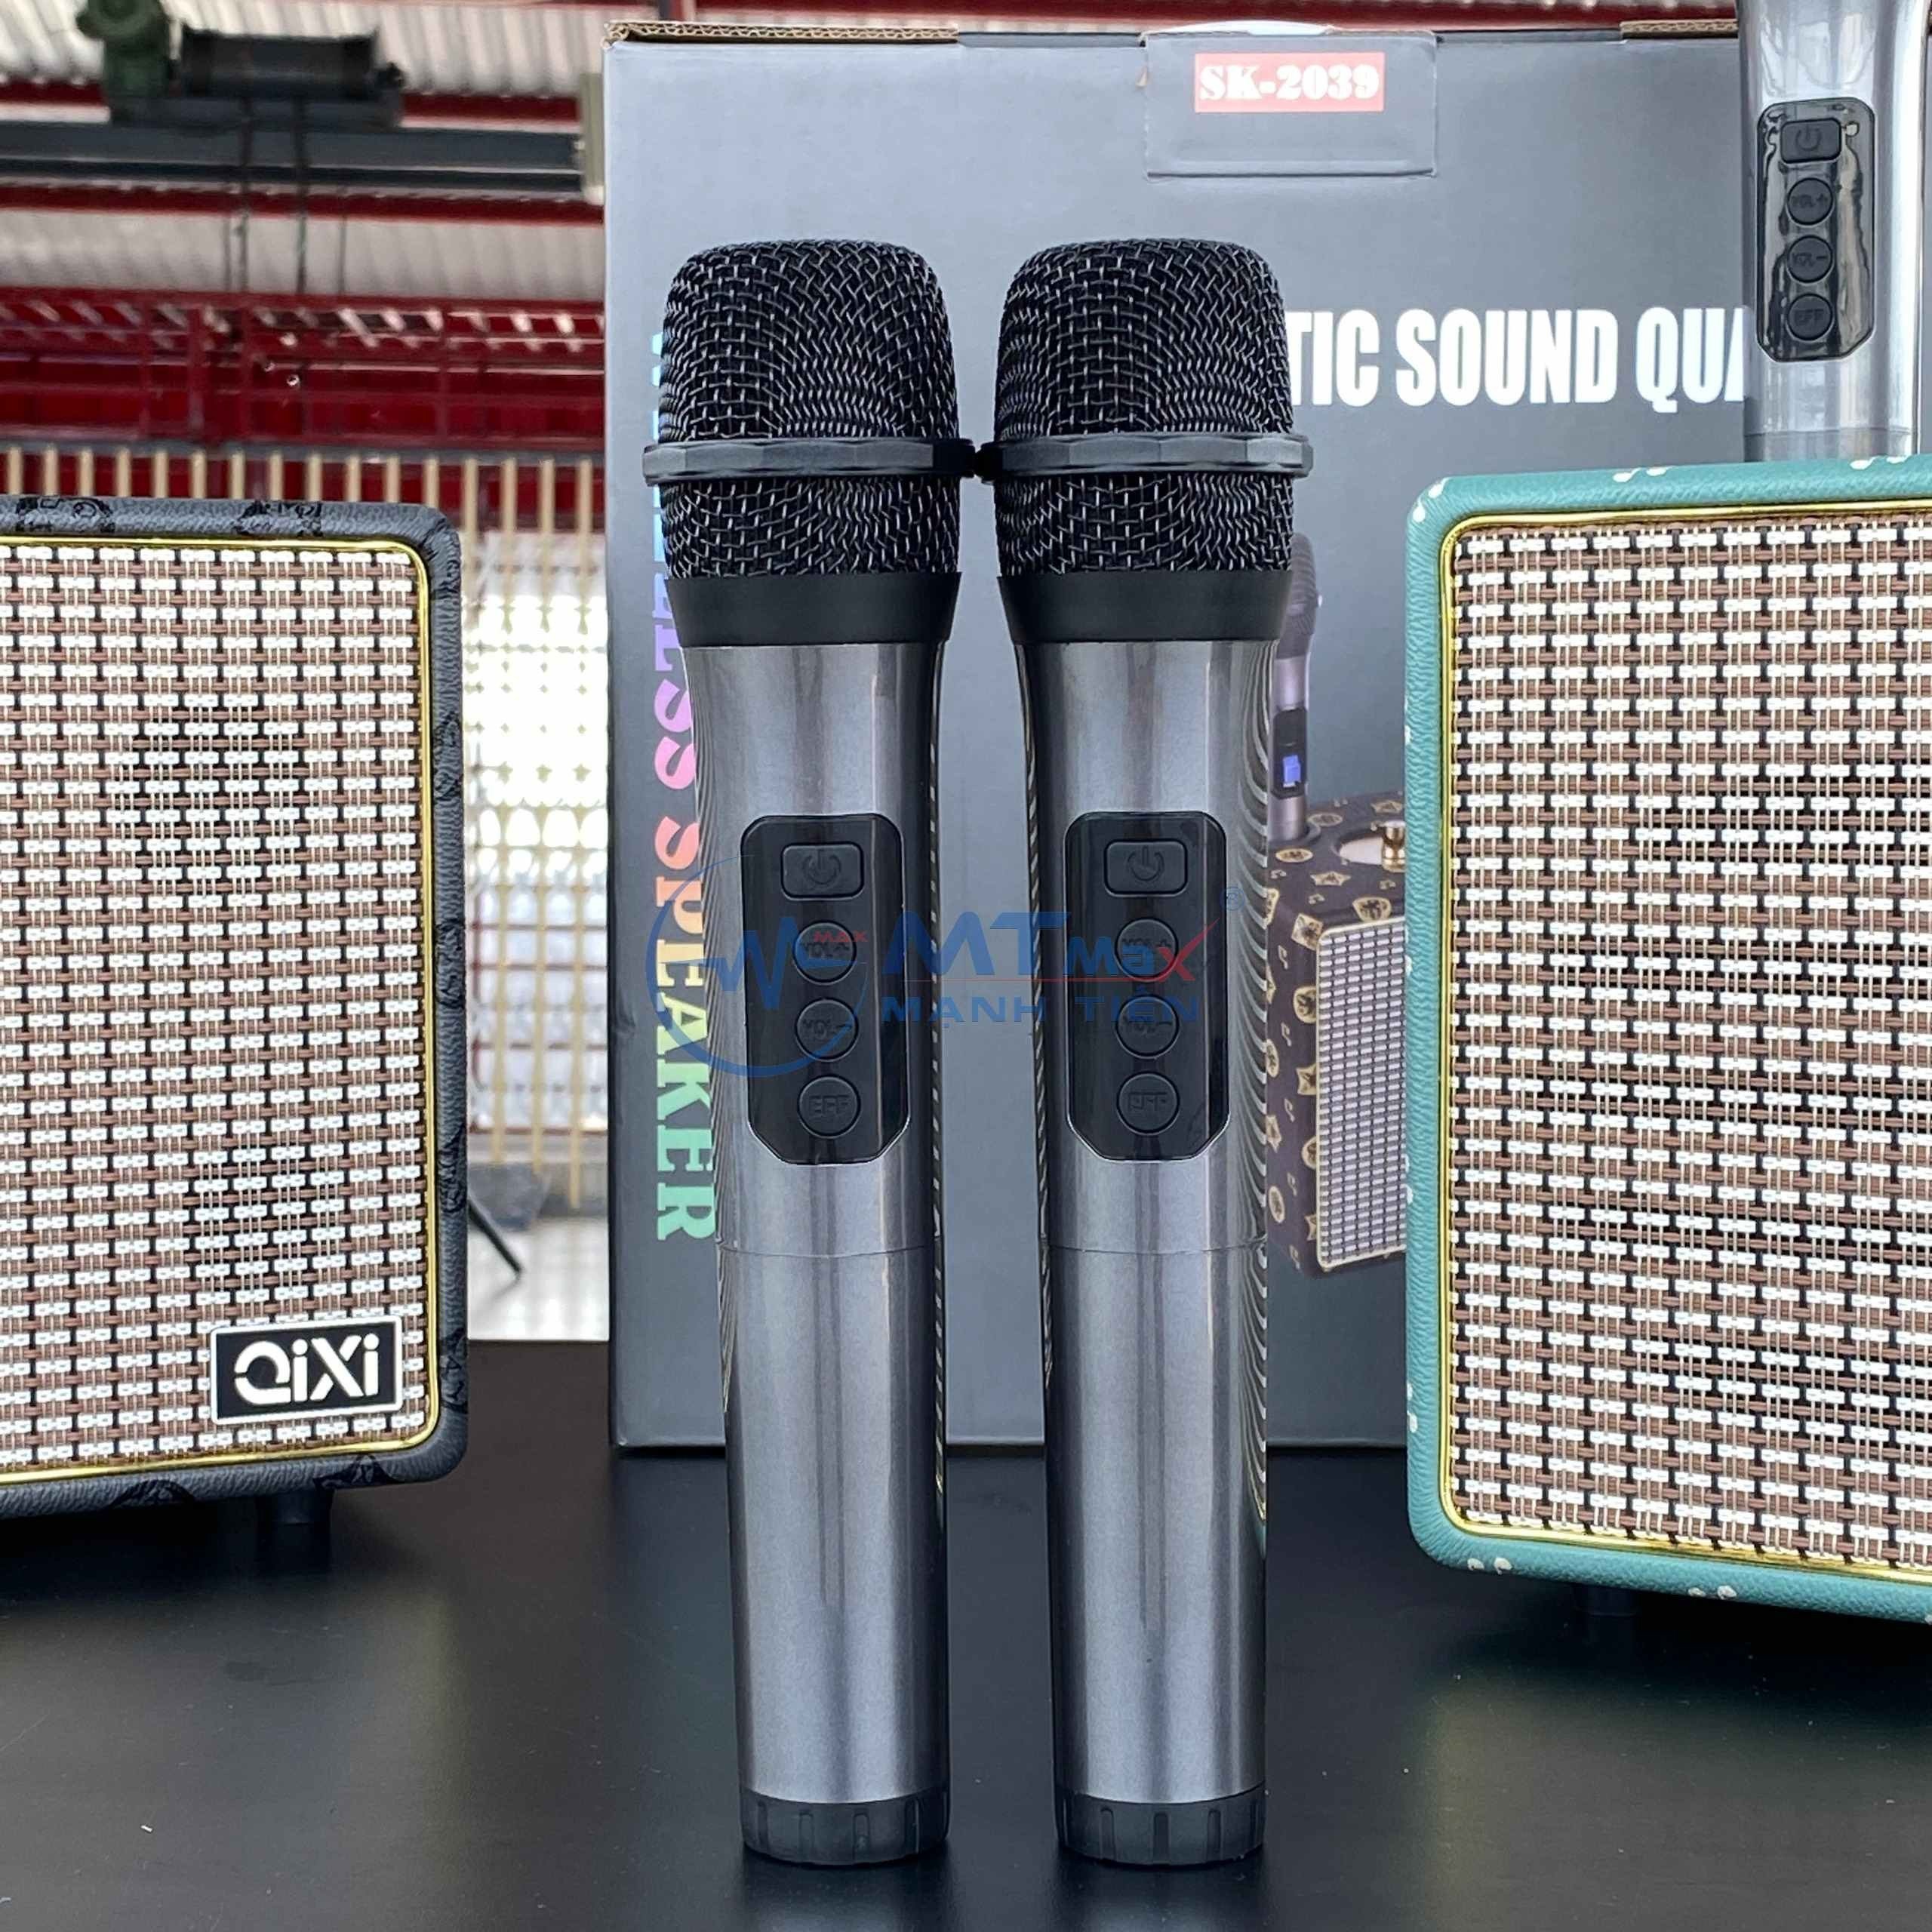 Loa Bluetooth Karaoke Qixi SK2039 – Kèm 2 Micro Không Dây, Bass Uy Lực Tiếng Treble Trong Trẻo, Dung Lượng Pin 3600mah Và Thời Gian Chơi Lên Đến 6-10 Giờ